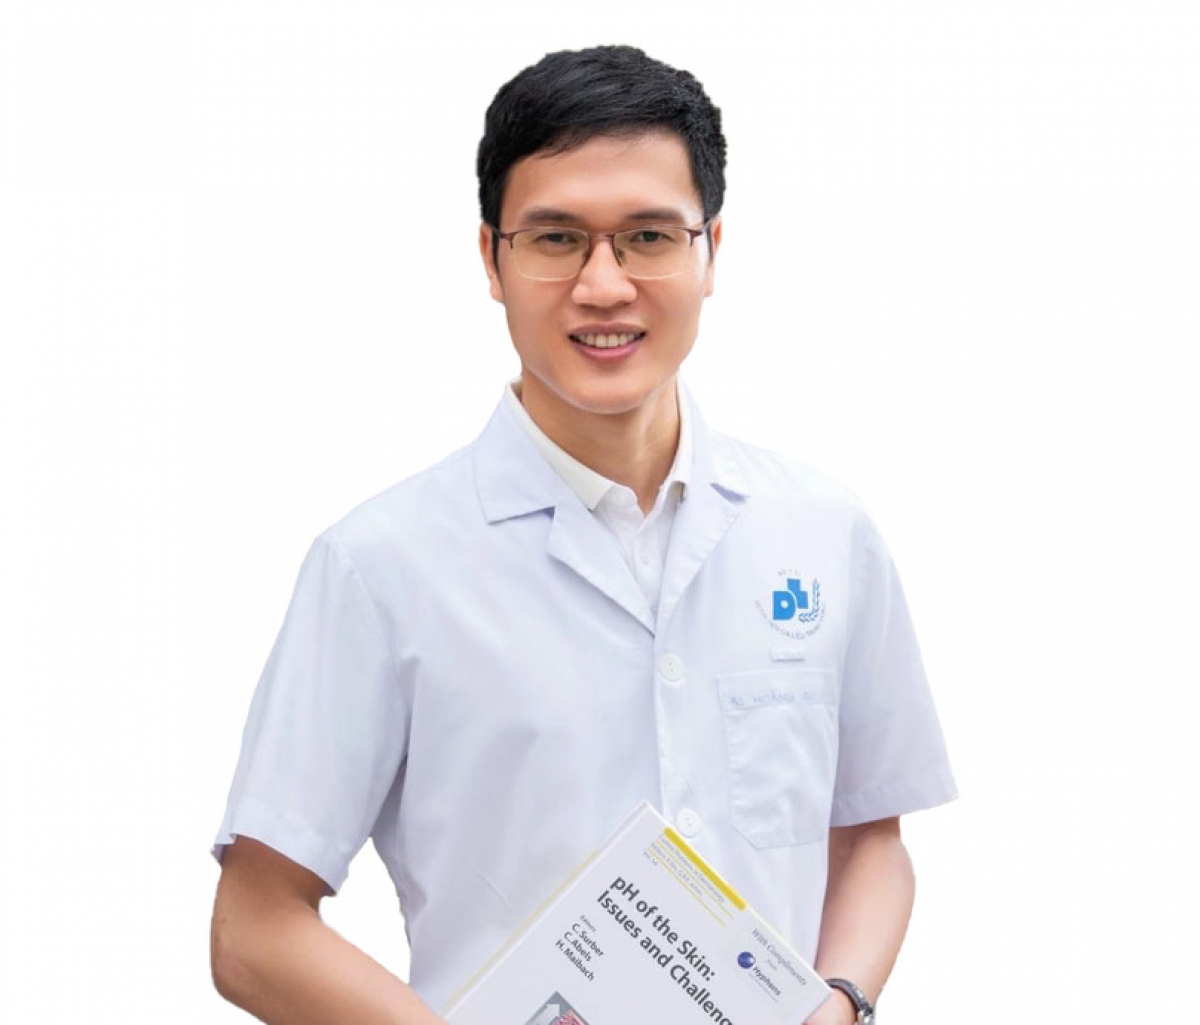 BS Hoàng Văn Tâm, Phó Trưởng khoa Điều trị nội trú ban ngày, Bệnh viện Da liễu Trung ương